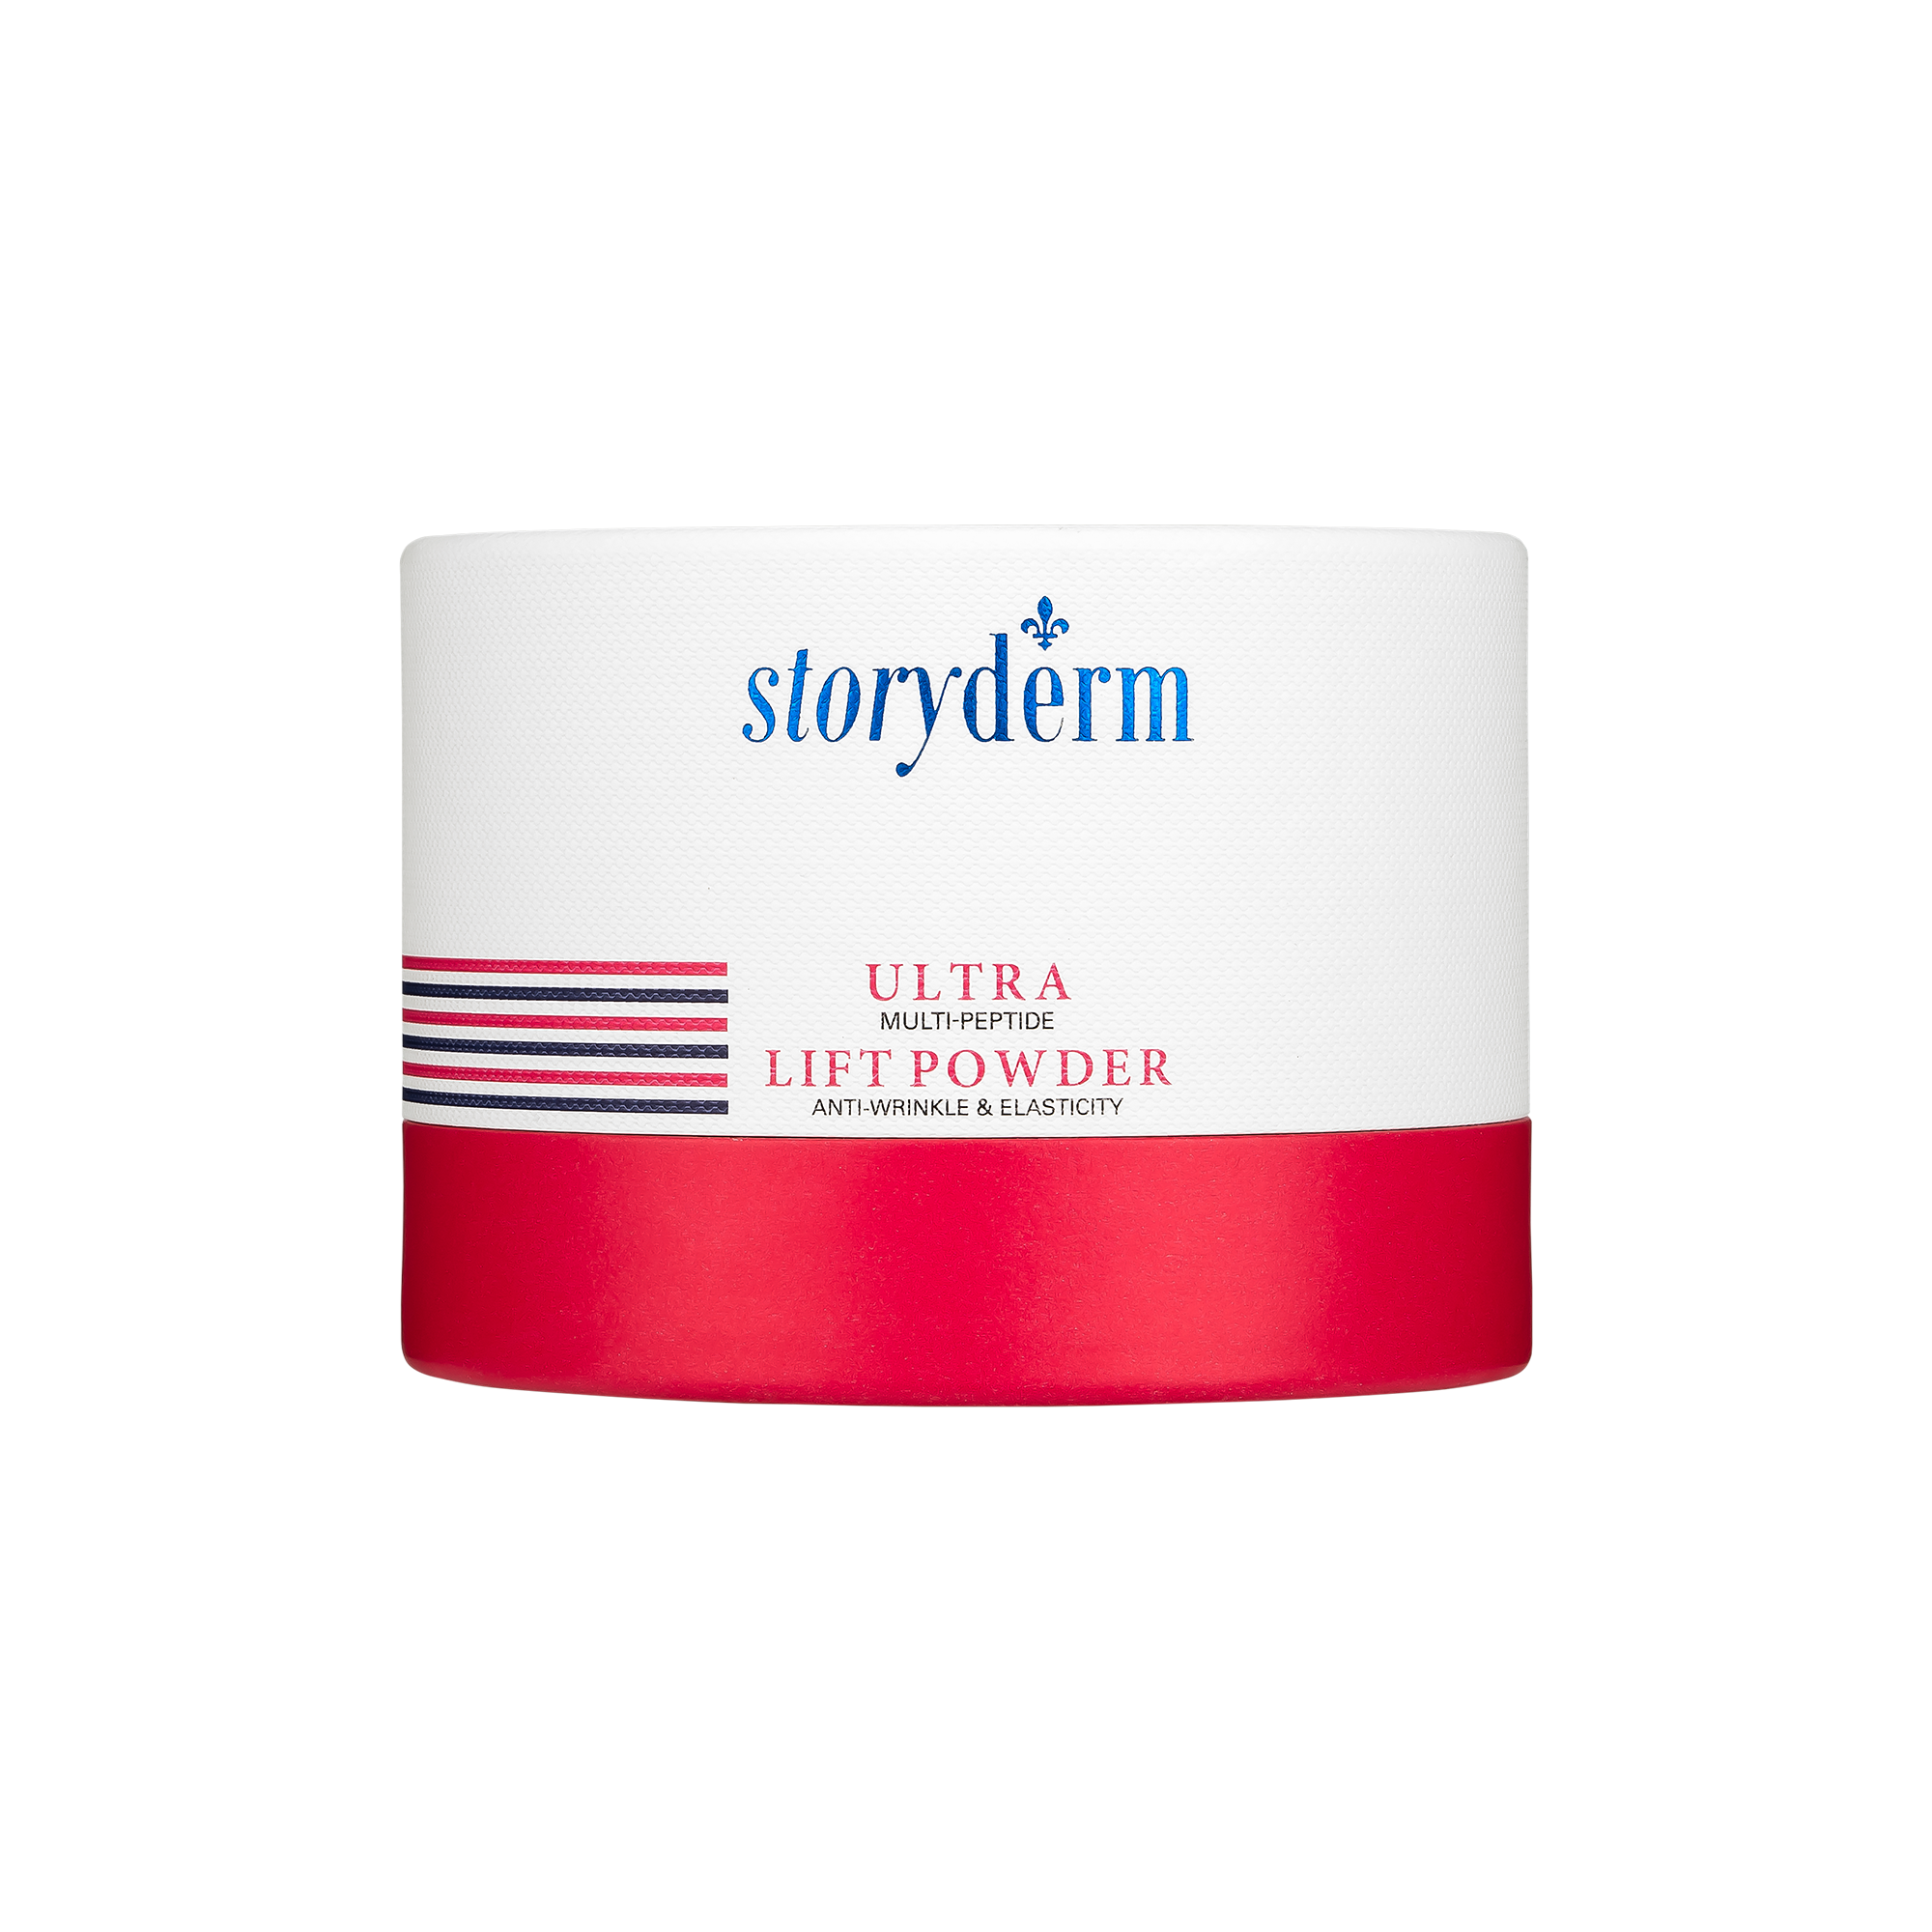 Набор масок с лифтинг эффектом Storyderm Ultra Lift Powder, 4 шт по 1,5г кислородная маска storyderm